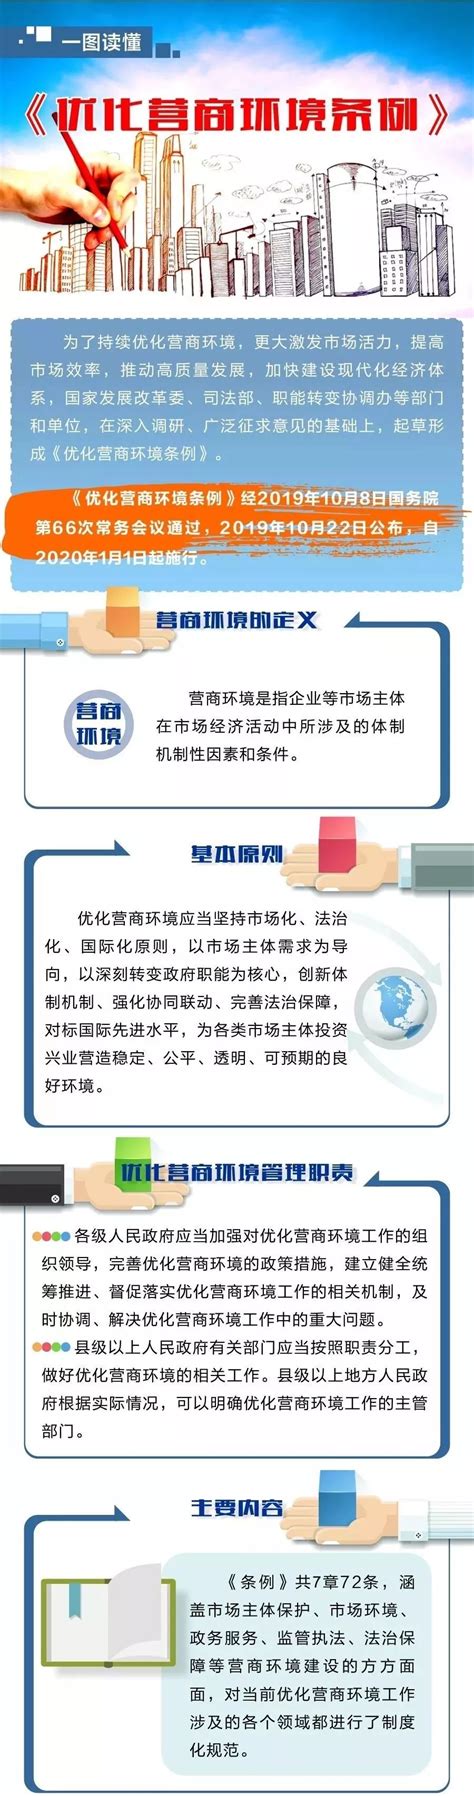 新闻列表 - 简阳市新经济产业园